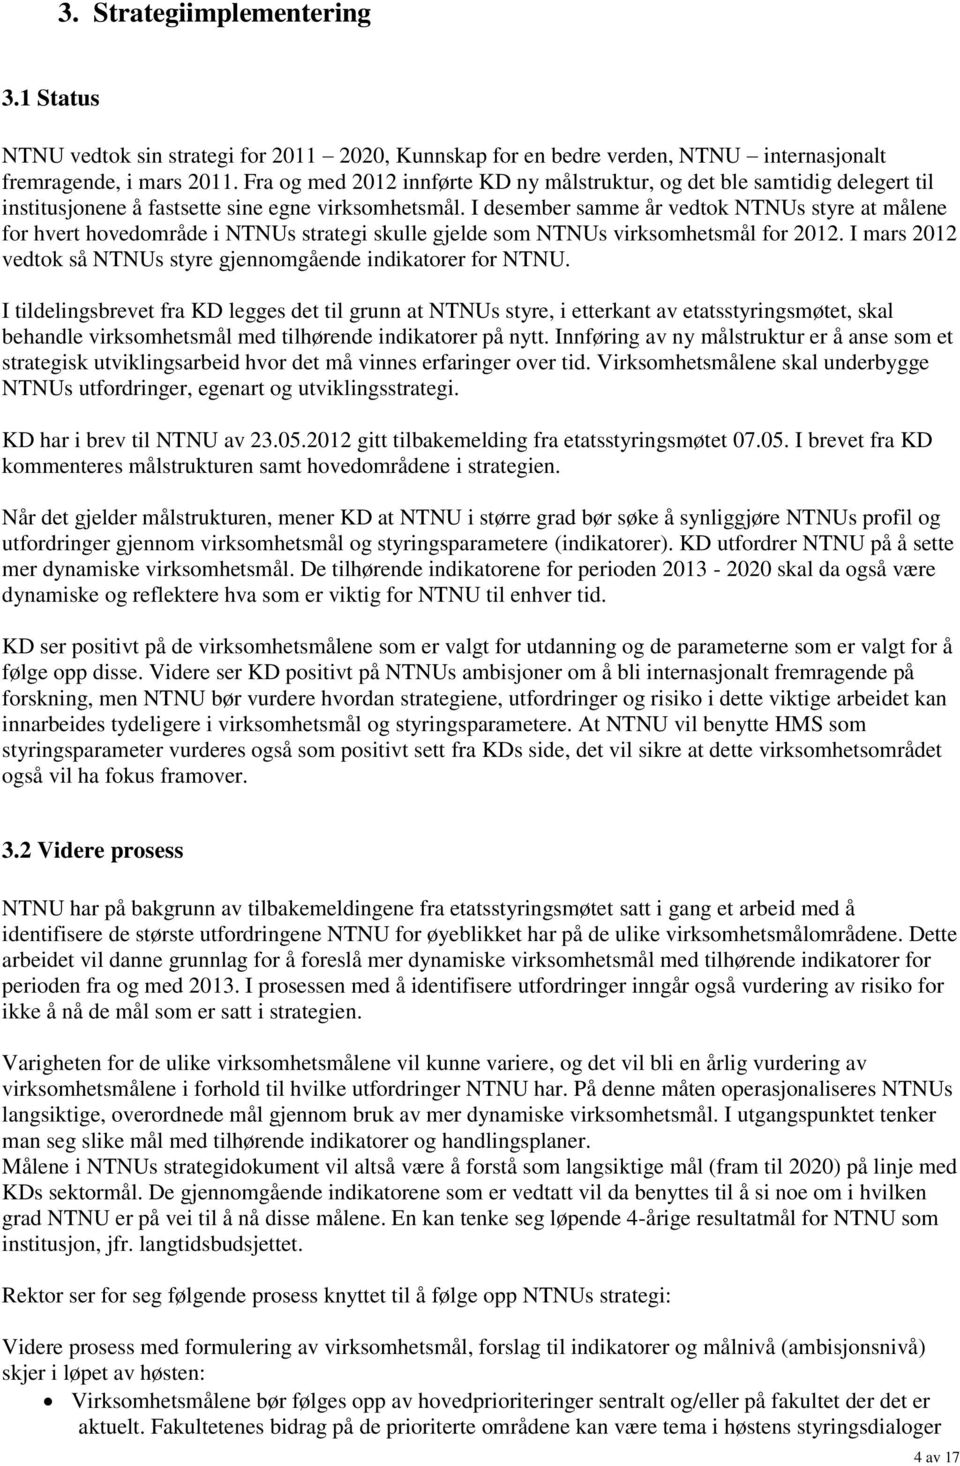 I desember samme år vedtok NTNUs styre at målene for hvert hovedområde i NTNUs strategi skulle gjelde som NTNUs virksomhetsmål for 2012.